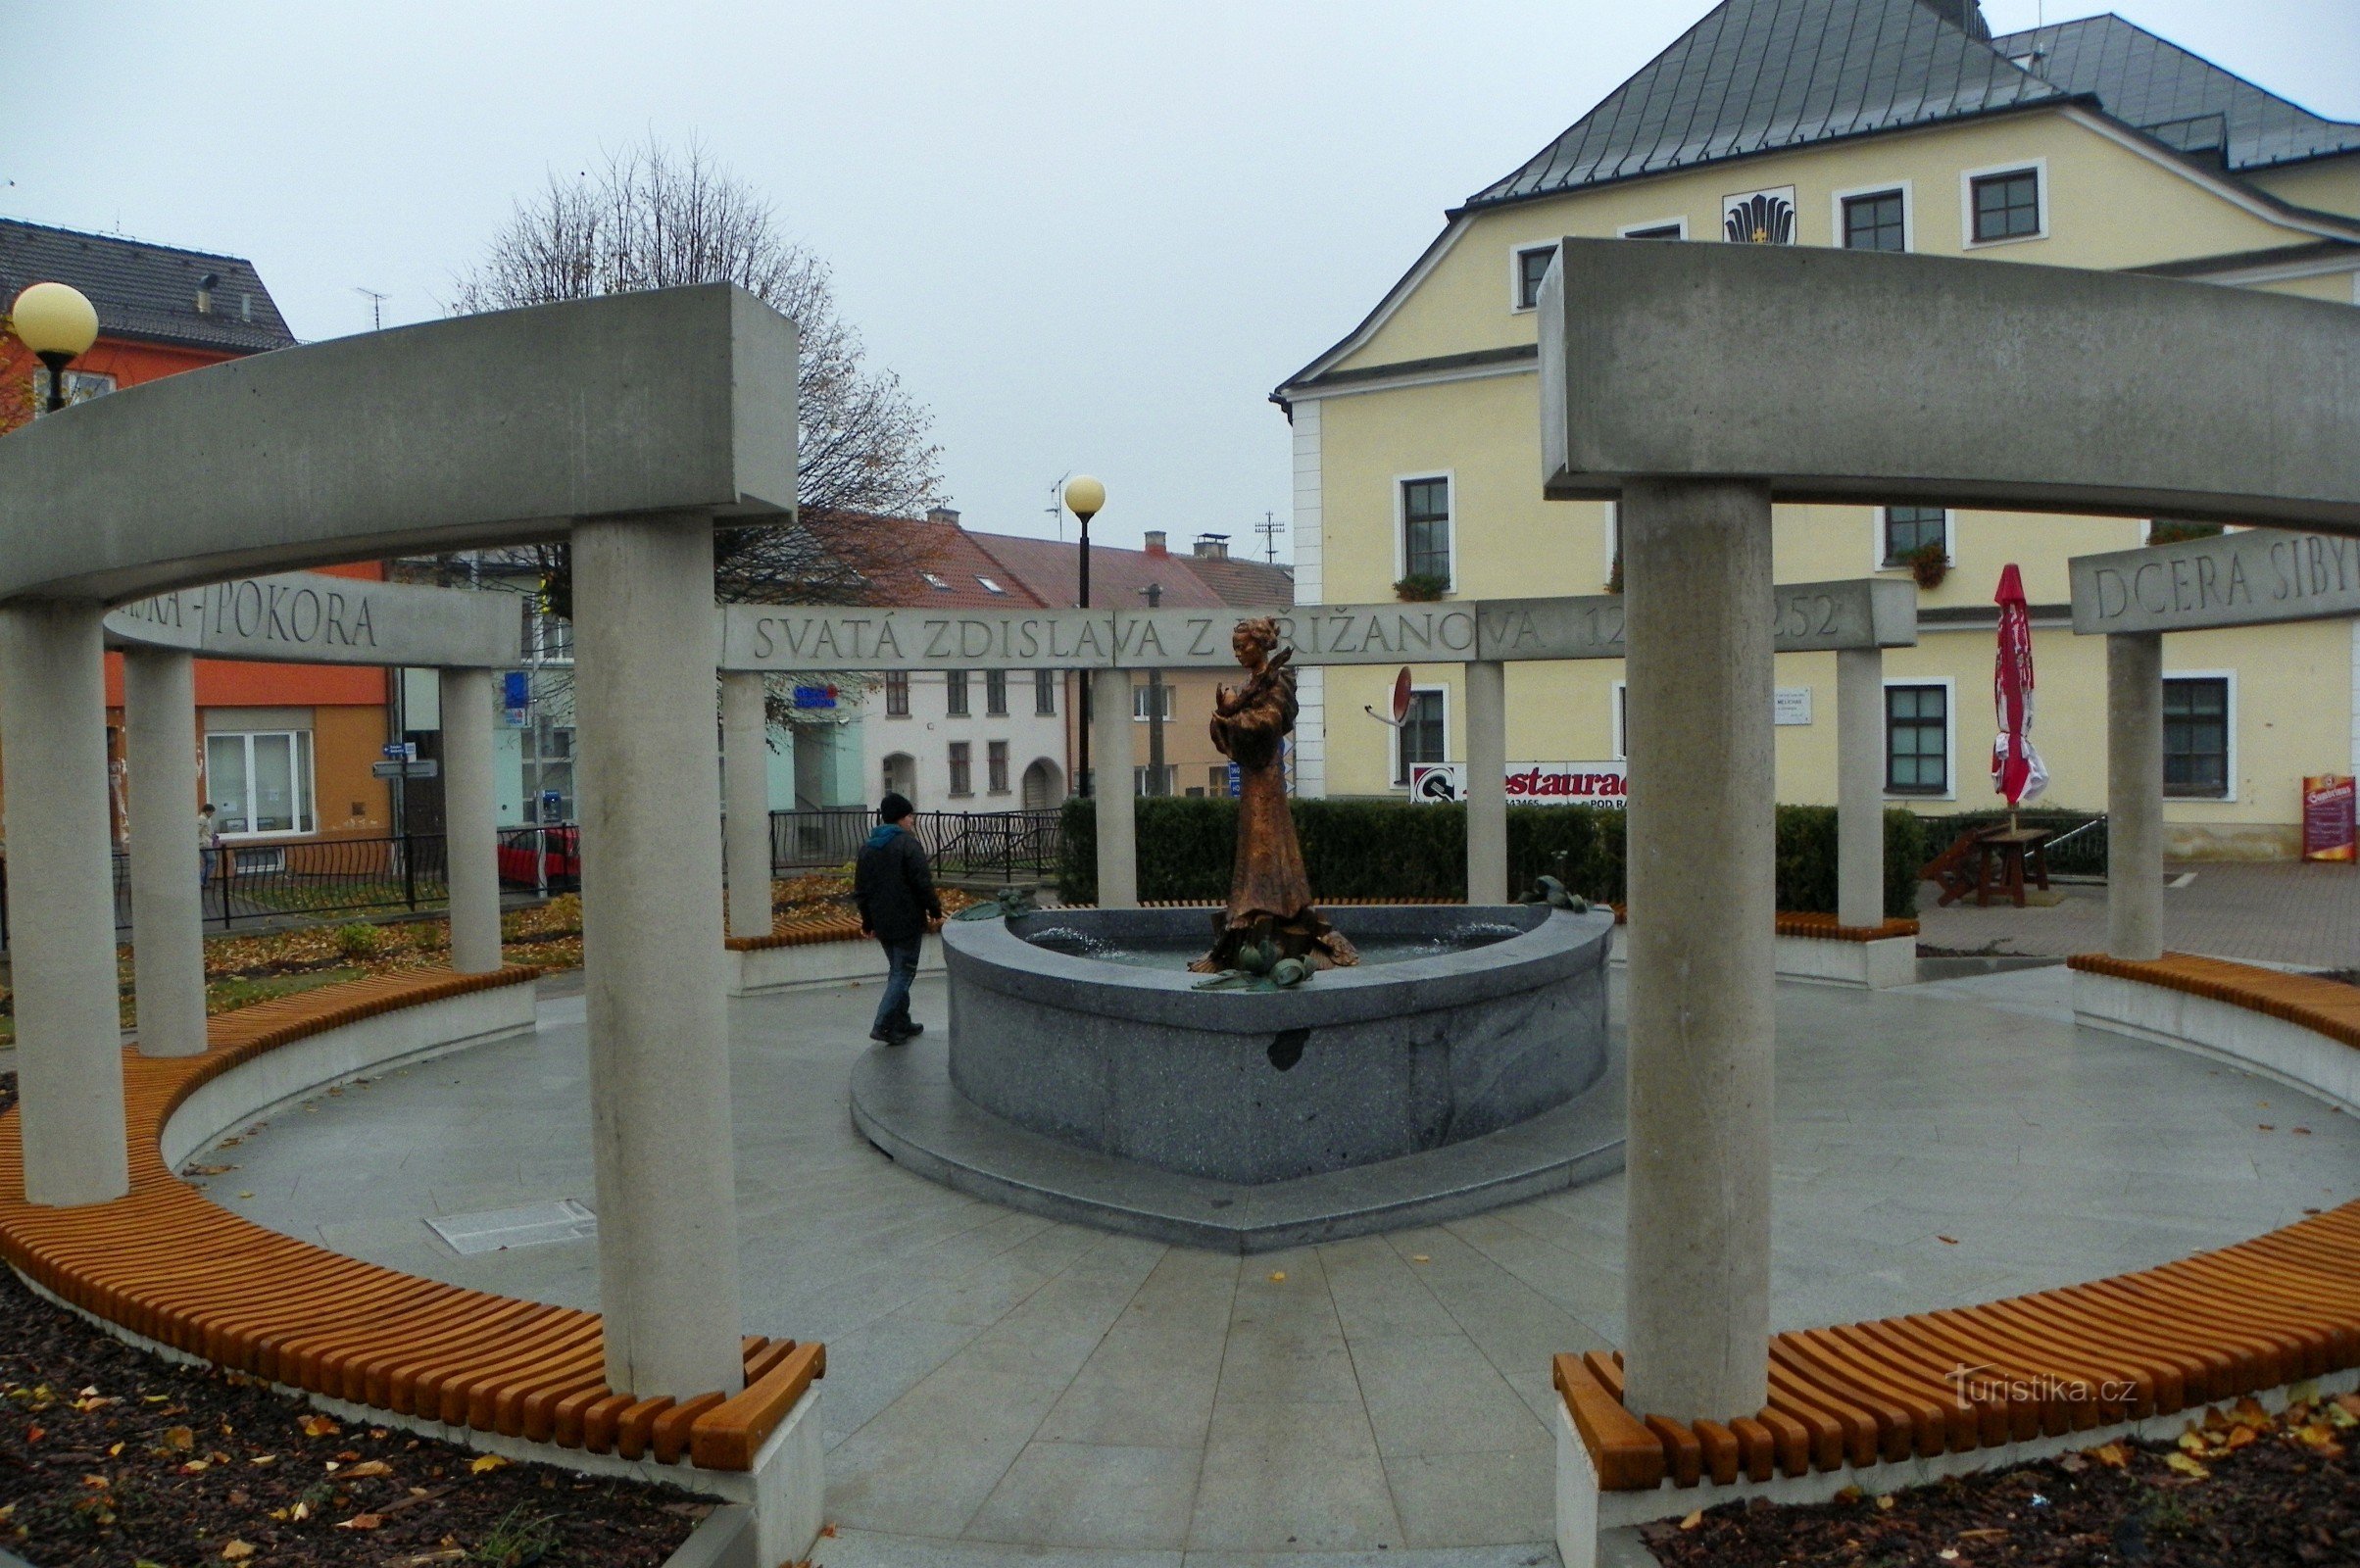 Monumento a St. Zdislava em Křižanov